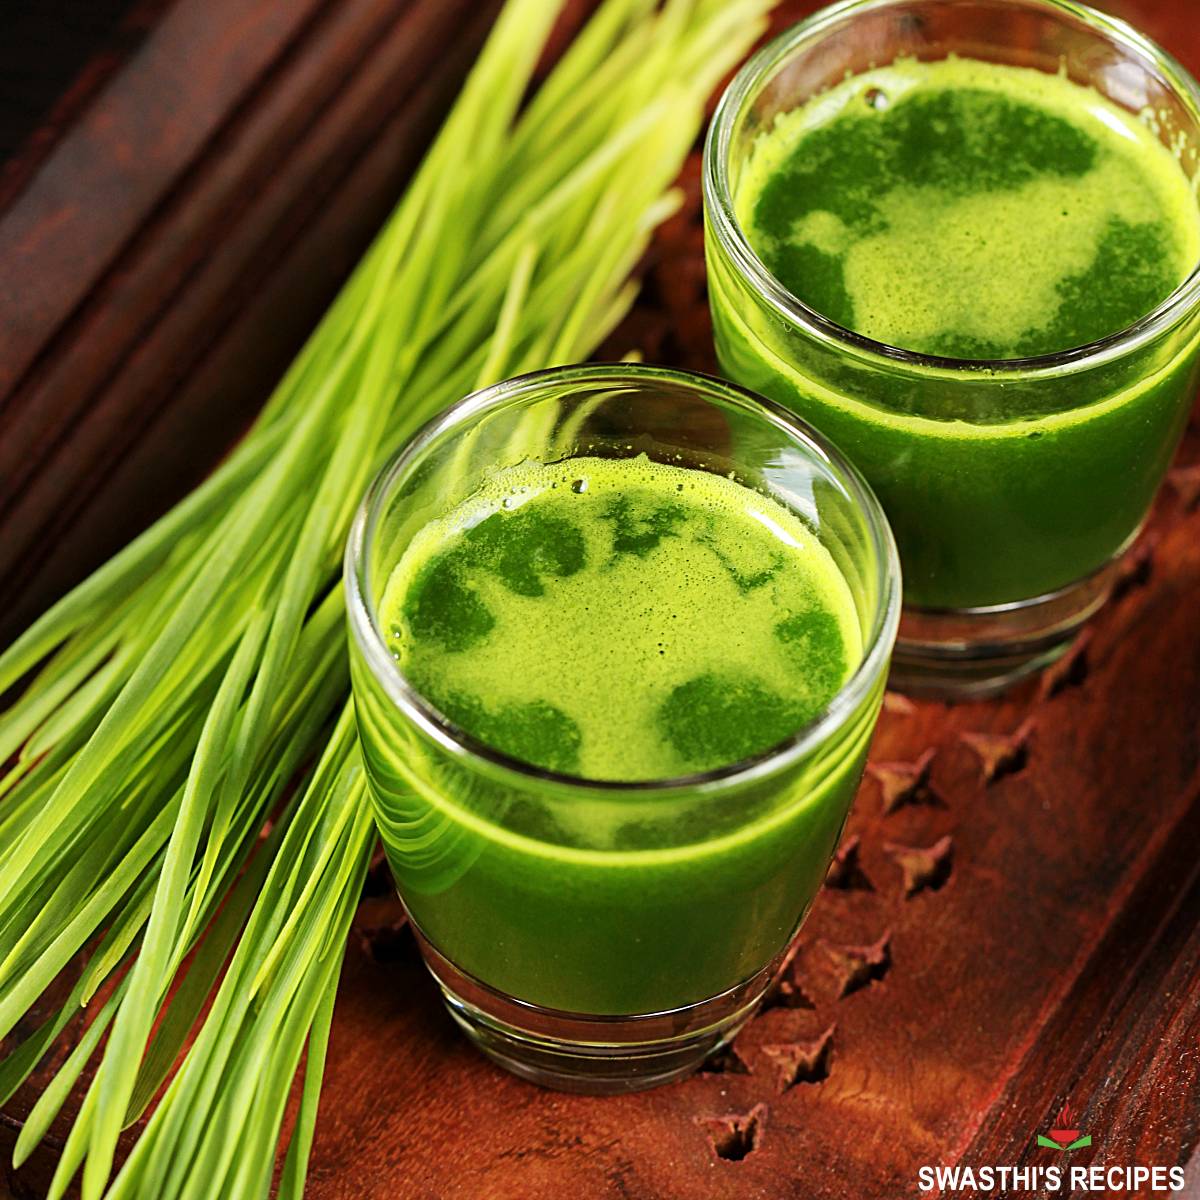 Wheatgrass shot served in a shot glass